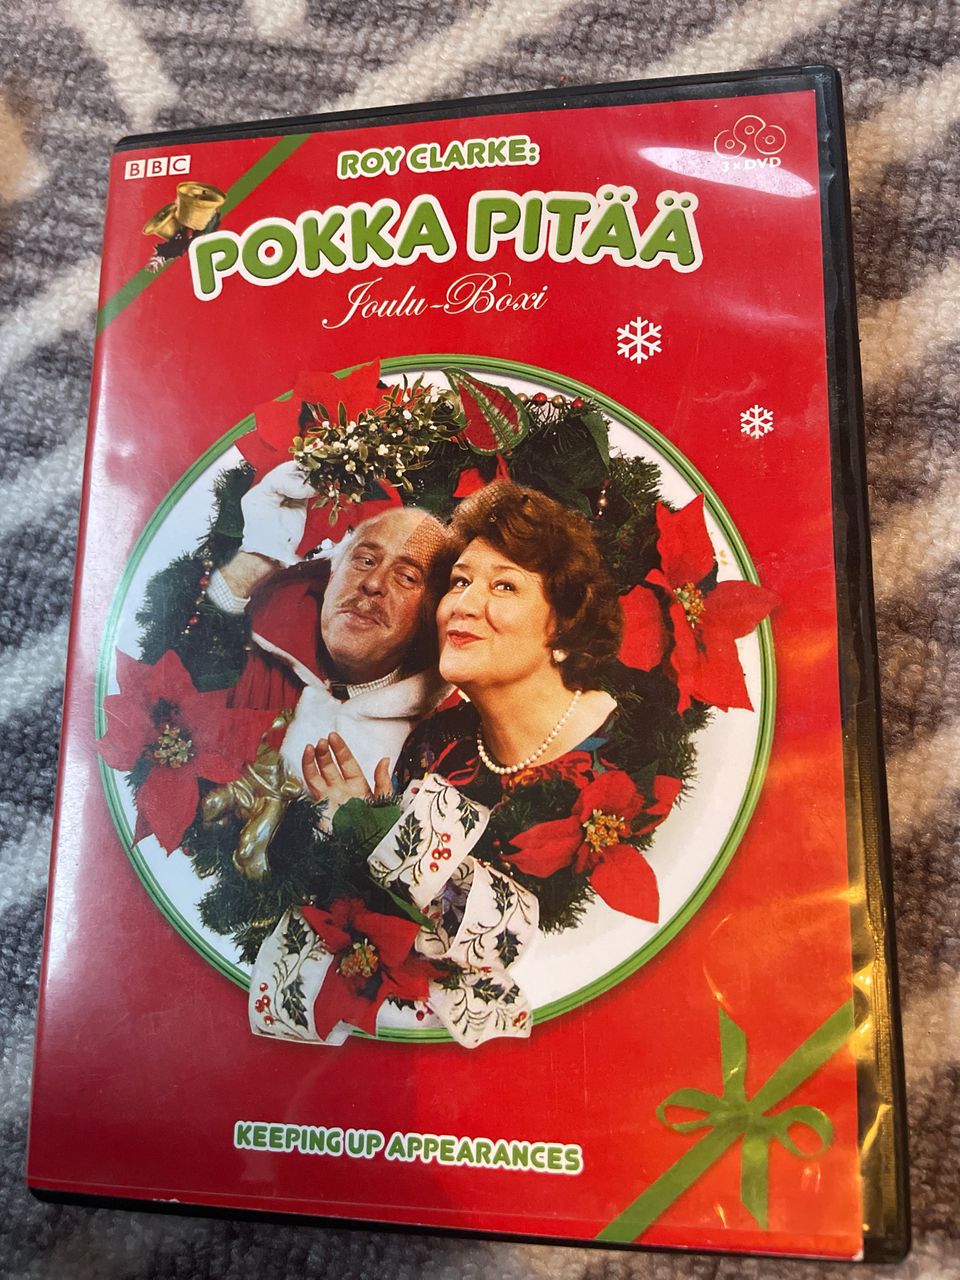 Pokka pitää -dvd-levy